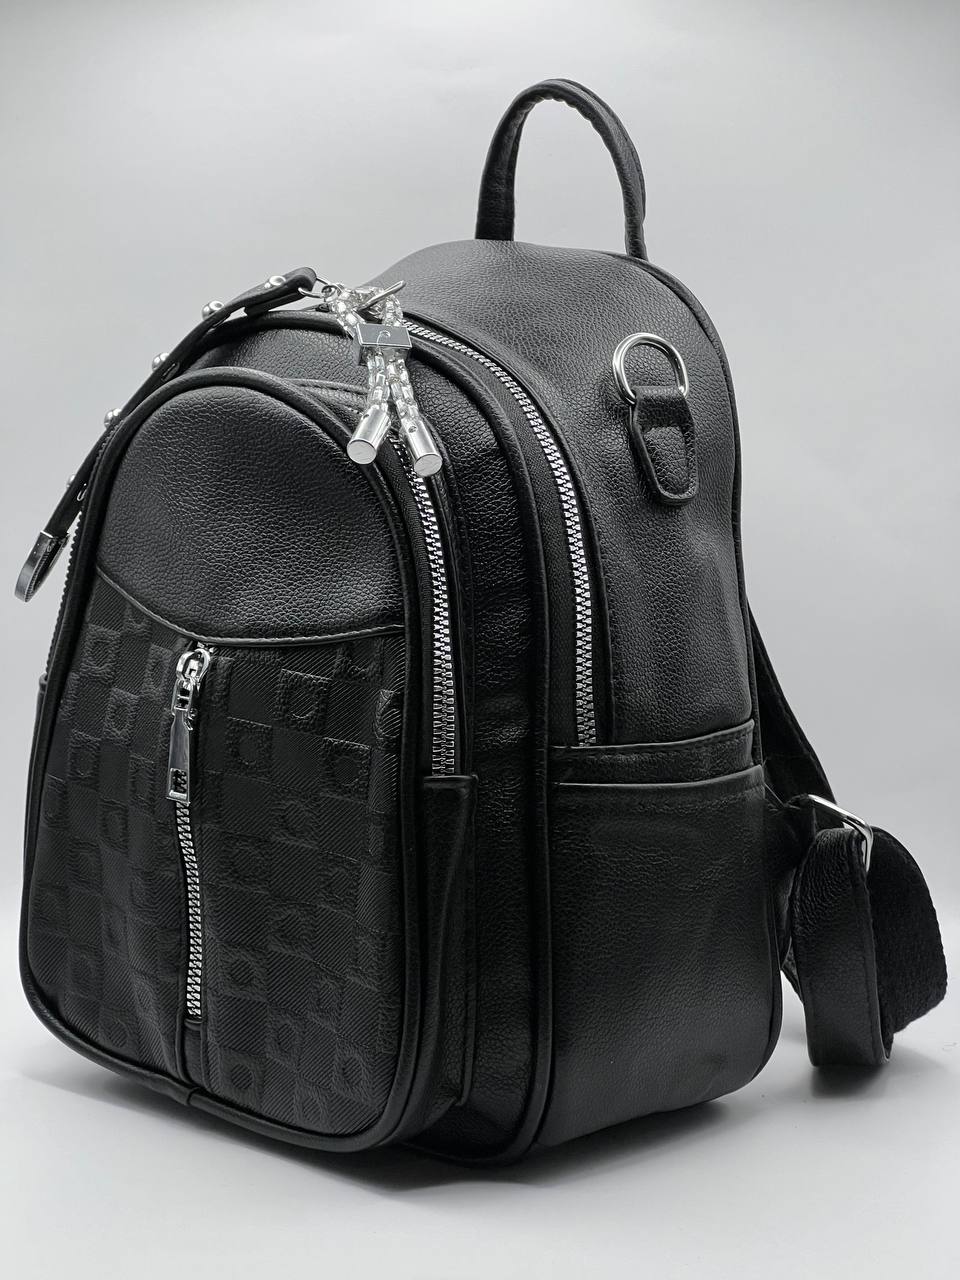 Сумка-рюкзак женская SunGold Р-80101 черная, 27х22х12 см